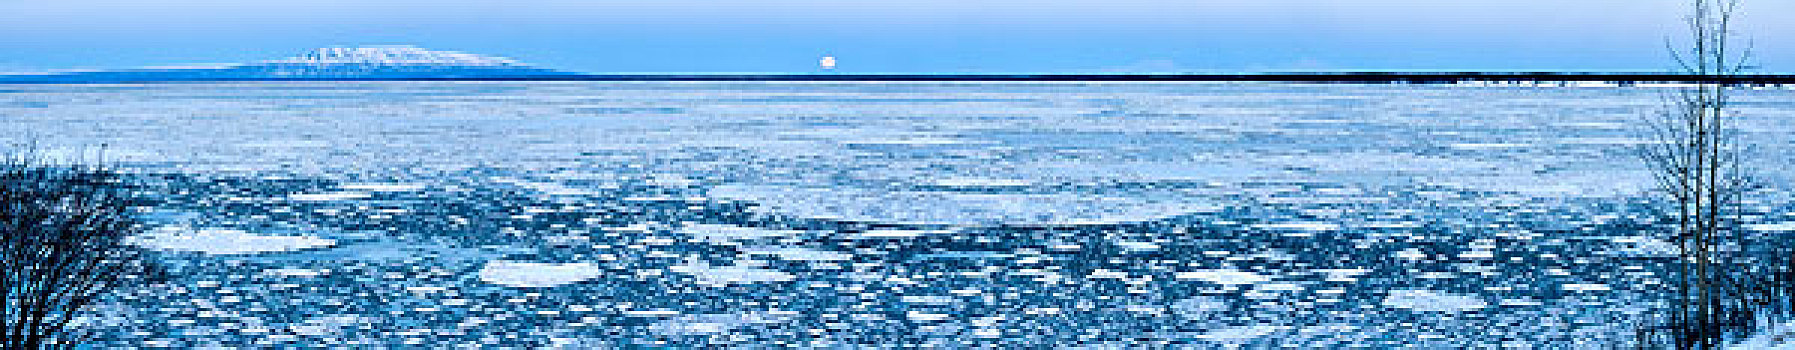 全景,满月,后面,山,冰,库克海峡,阿拉斯加,冬天